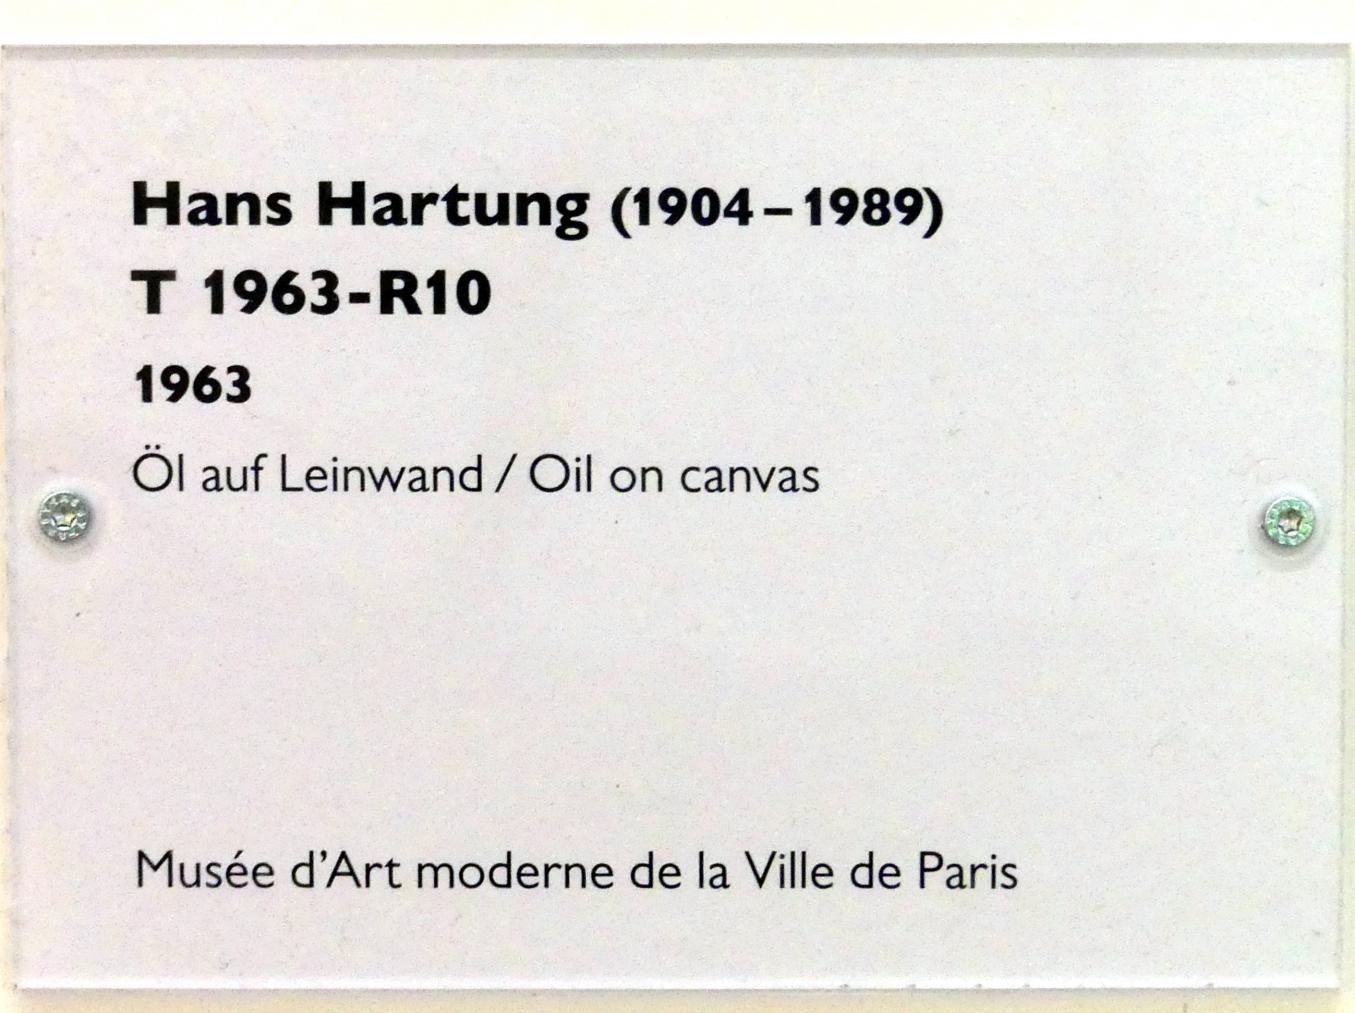 Hans Hartung (1933–1989), T 1963-R10, Schwäbisch Hall, Kunsthalle Würth, Ausstellung "Das Musée d'Art moderne de la Ville de Paris zu Gast in der Kunsthalle Würth" vom 15.04.-15.09.2019, 1963, Bild 2/2